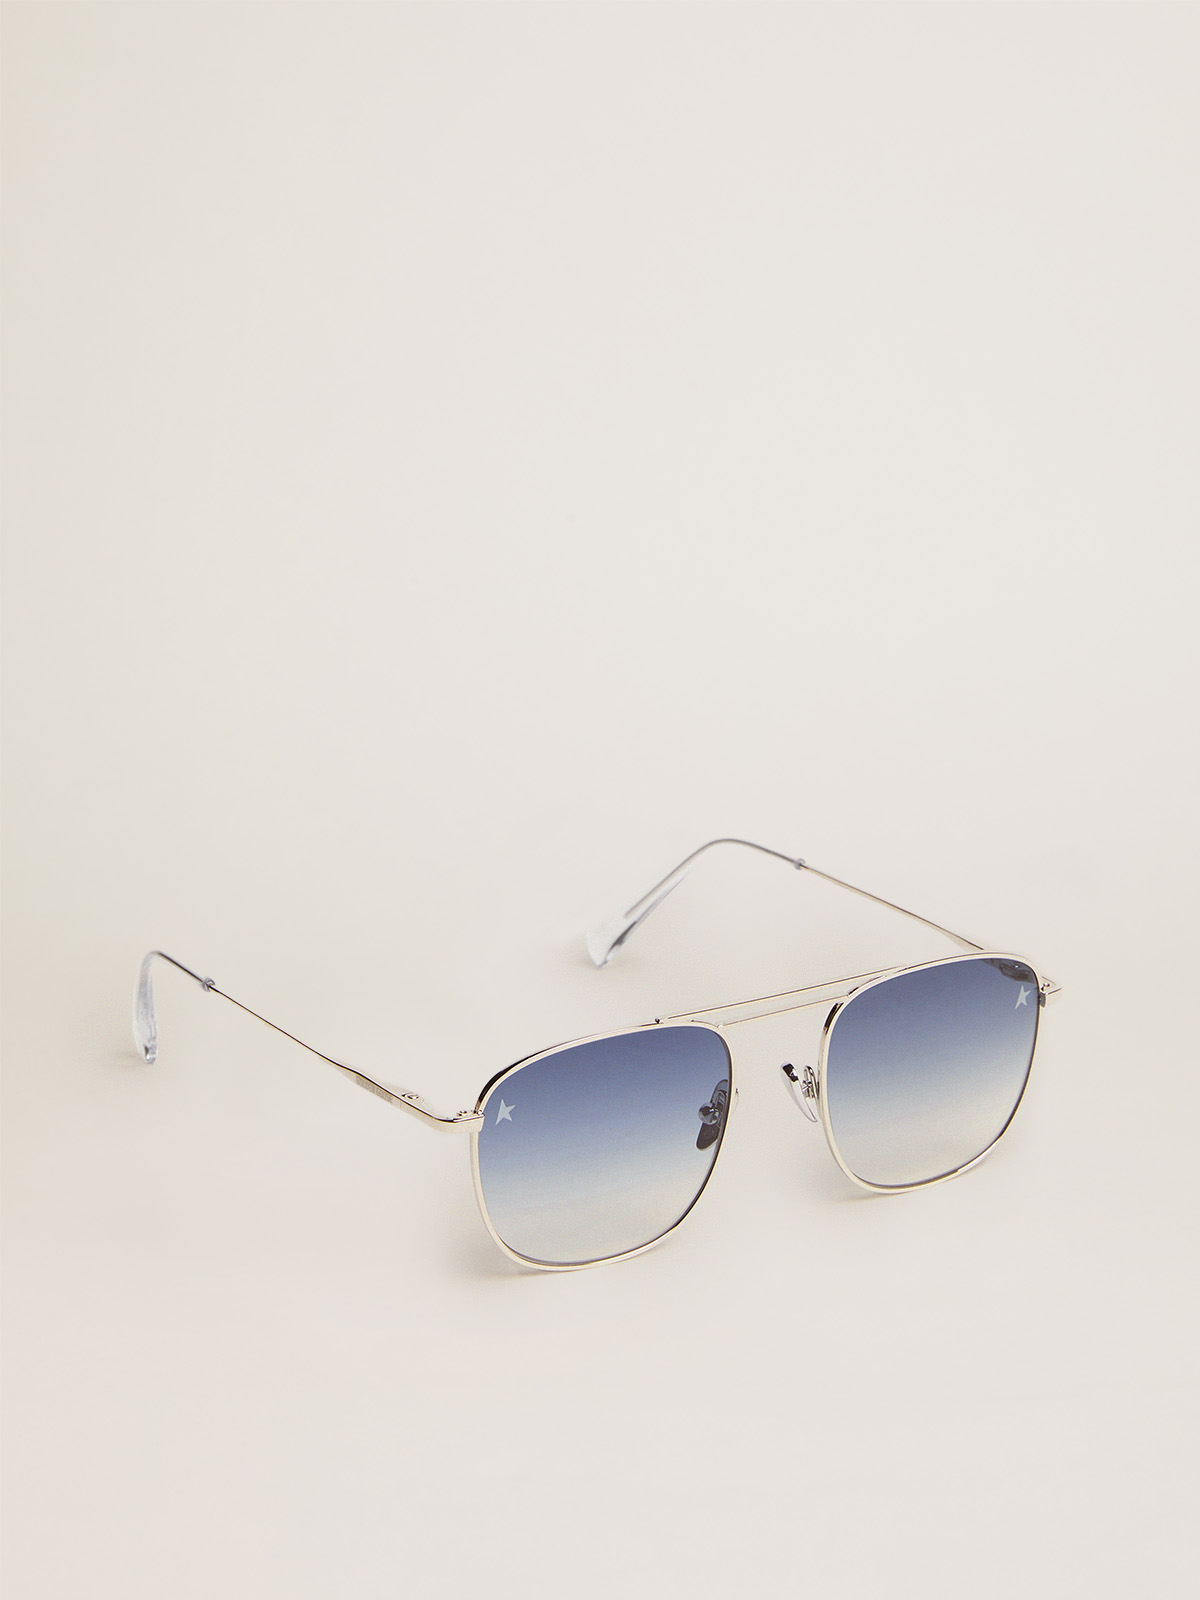 Louis Vuitton Men's Sunglasses for sale in Little Rock, Arkansas